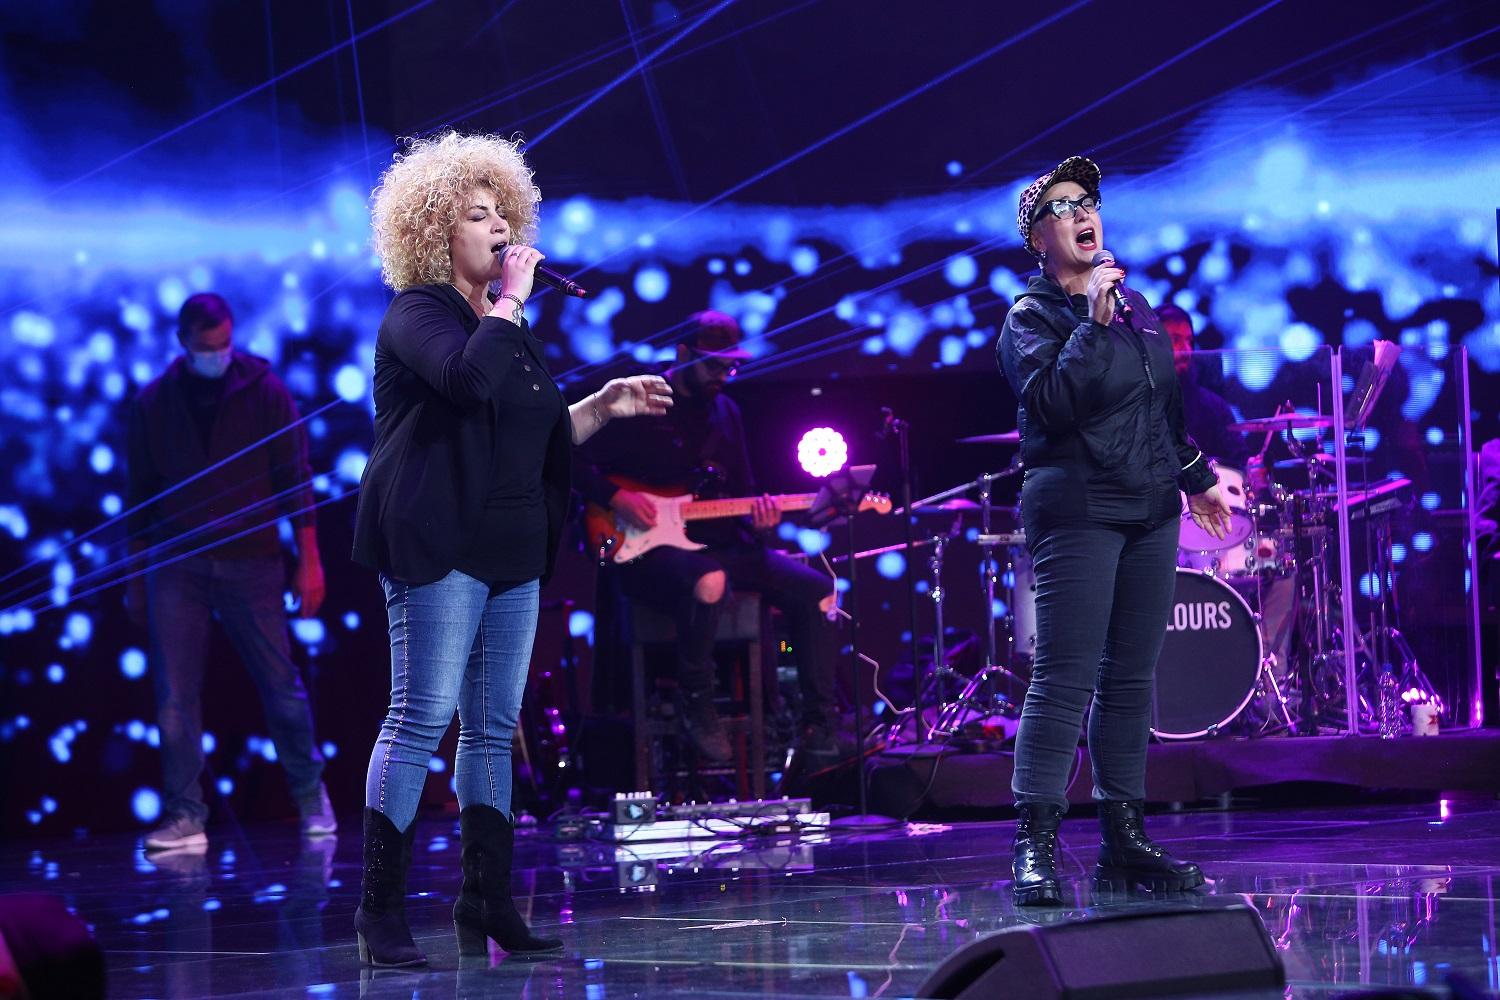 Ultimele repetiții alături de invitații speciali înainte de marea finală X Factor de vineri, de la 20.00, la Antena 1: ” Am emoții de parcă m-am apucat acum de cântat!”